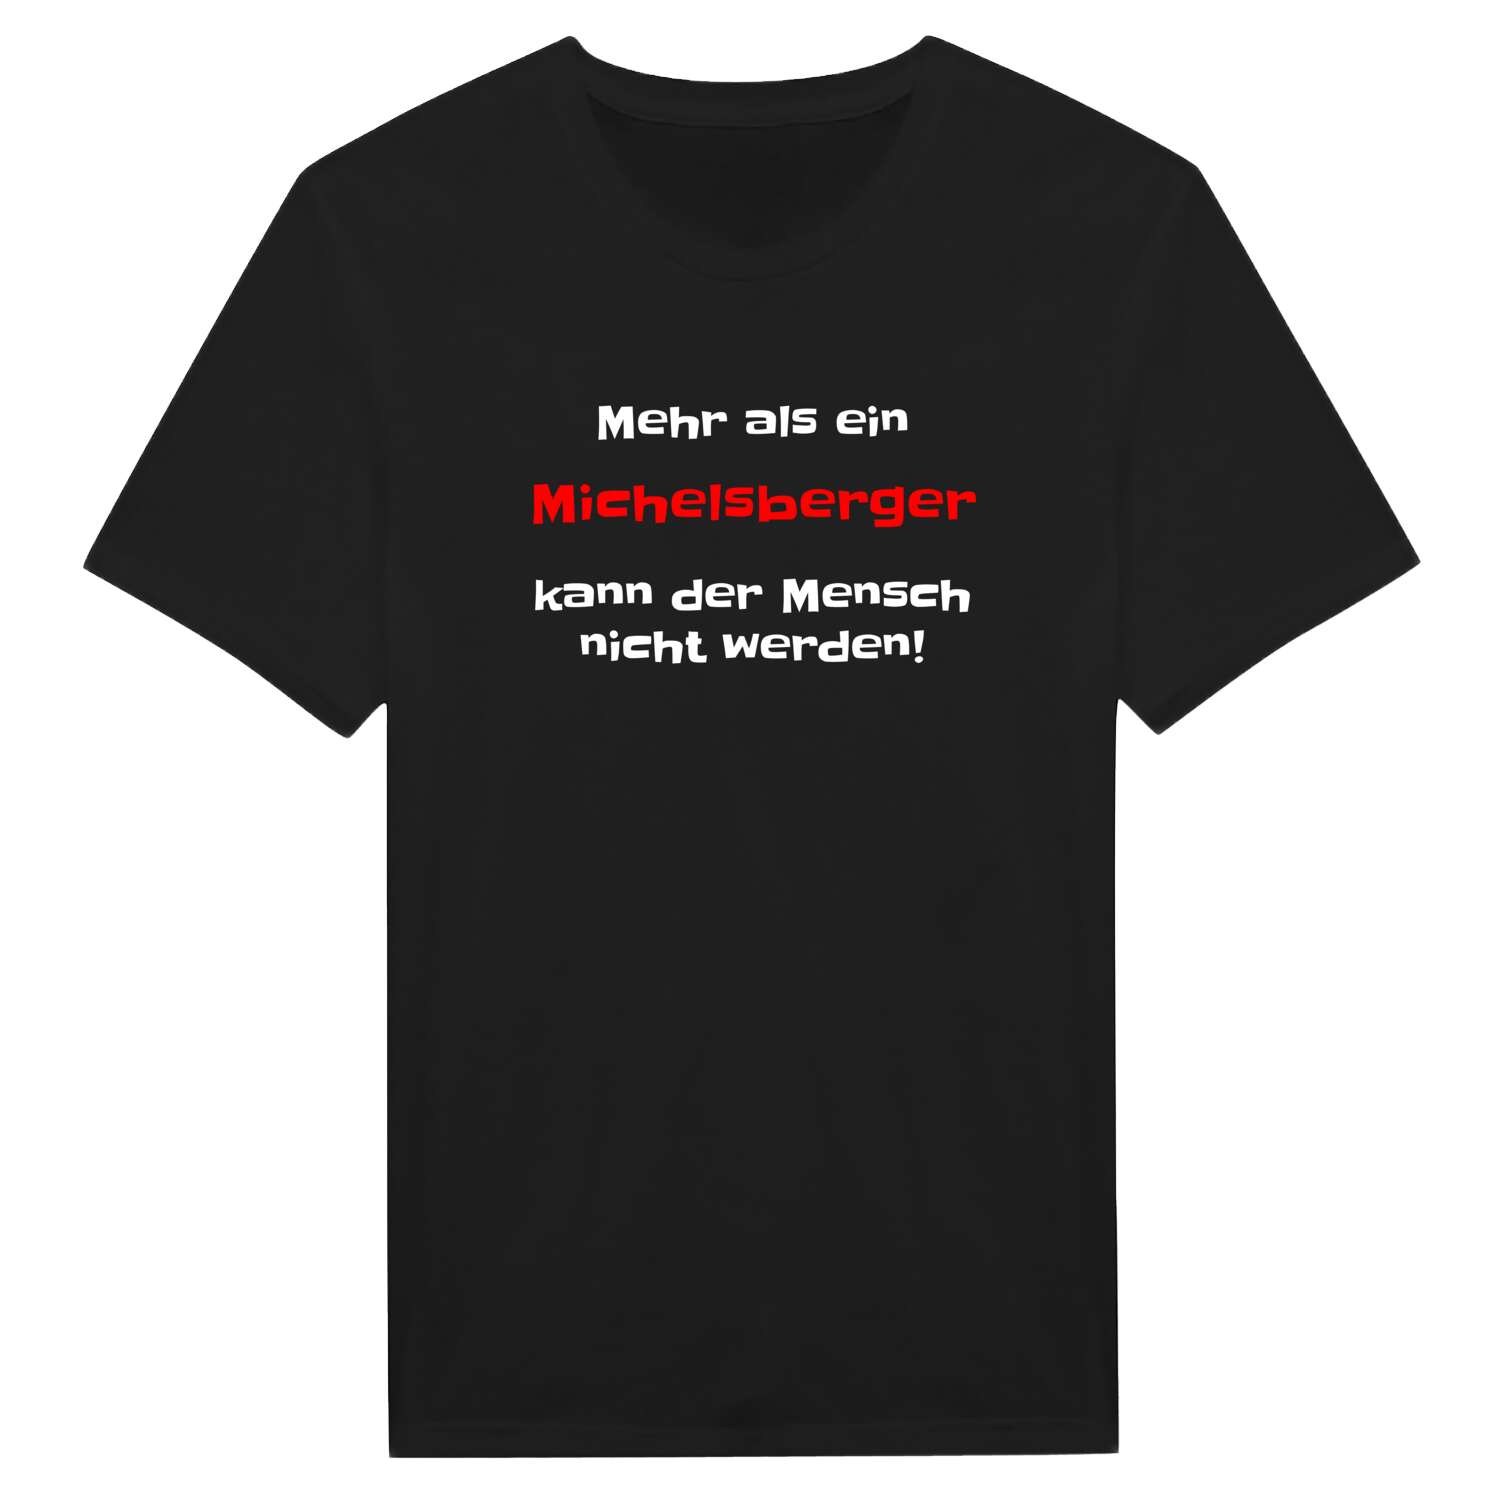 Michelsberg T-Shirt »Mehr als ein«